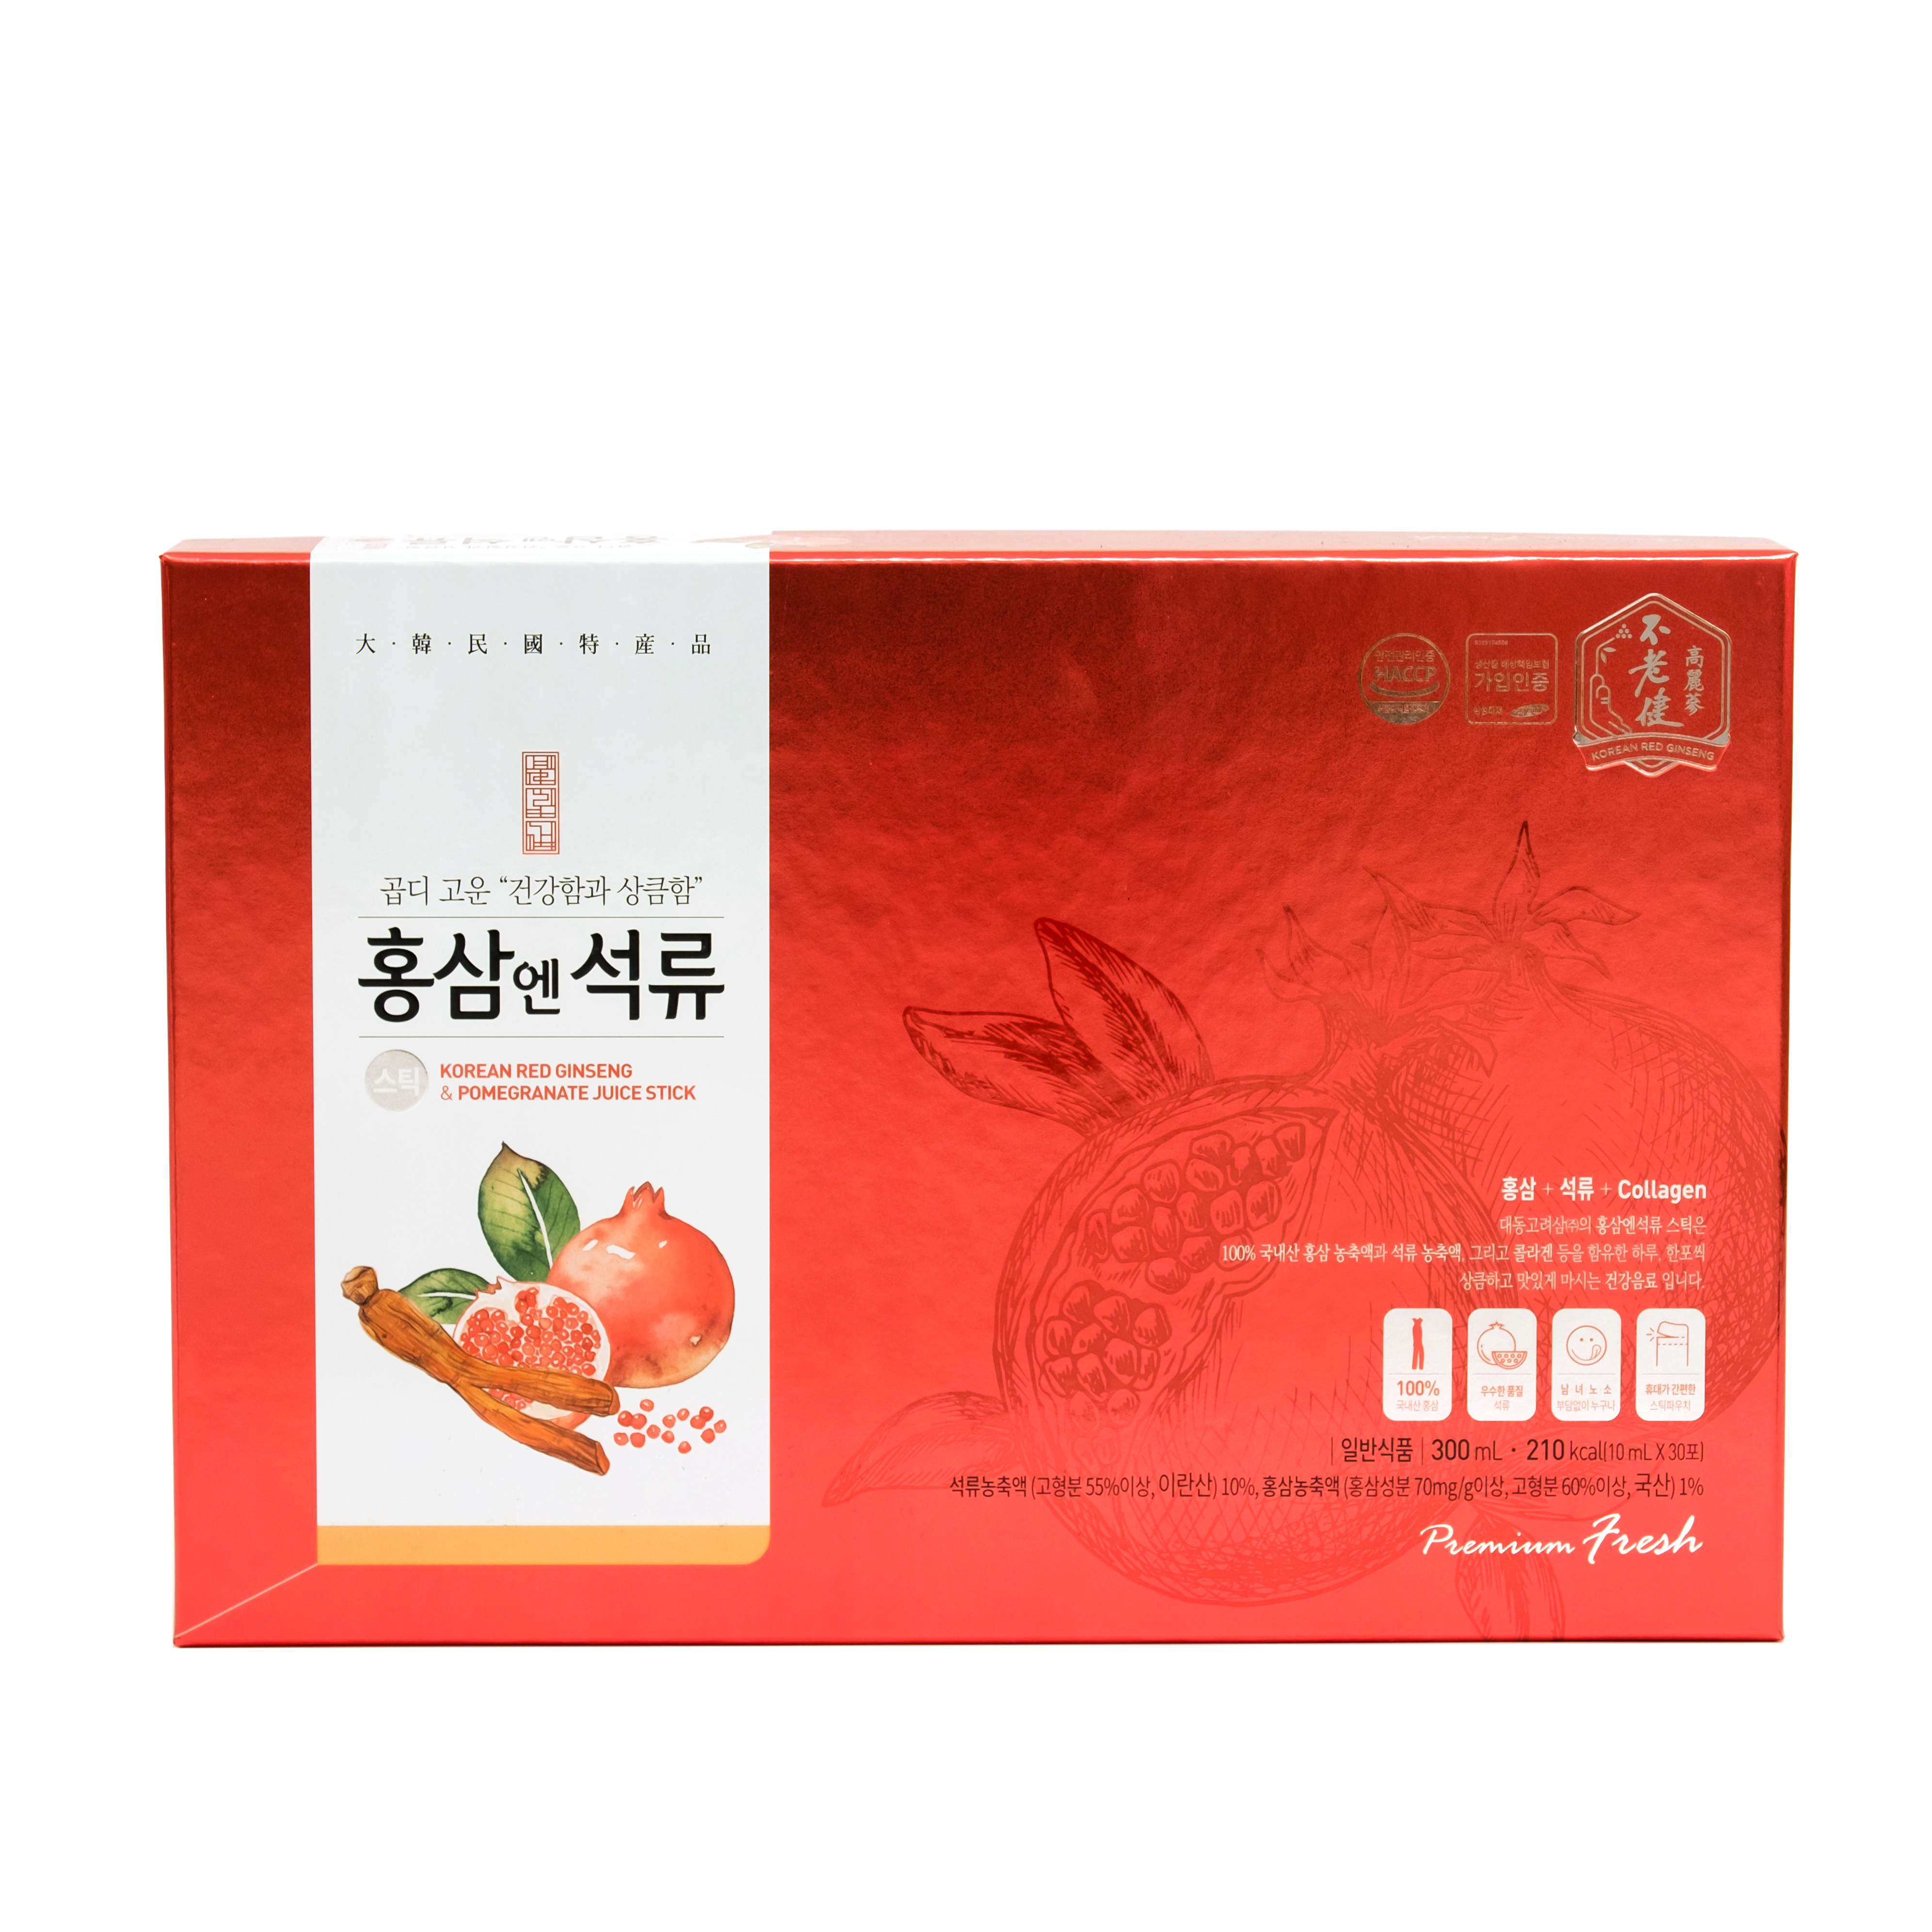 Nước hồng sâm lựu collagen Hàn Quốc Daedong Korea Ginseng 10ml x 30 gói -  Cung cấp collagen, chống lão hóa, giảm mệt mỏi